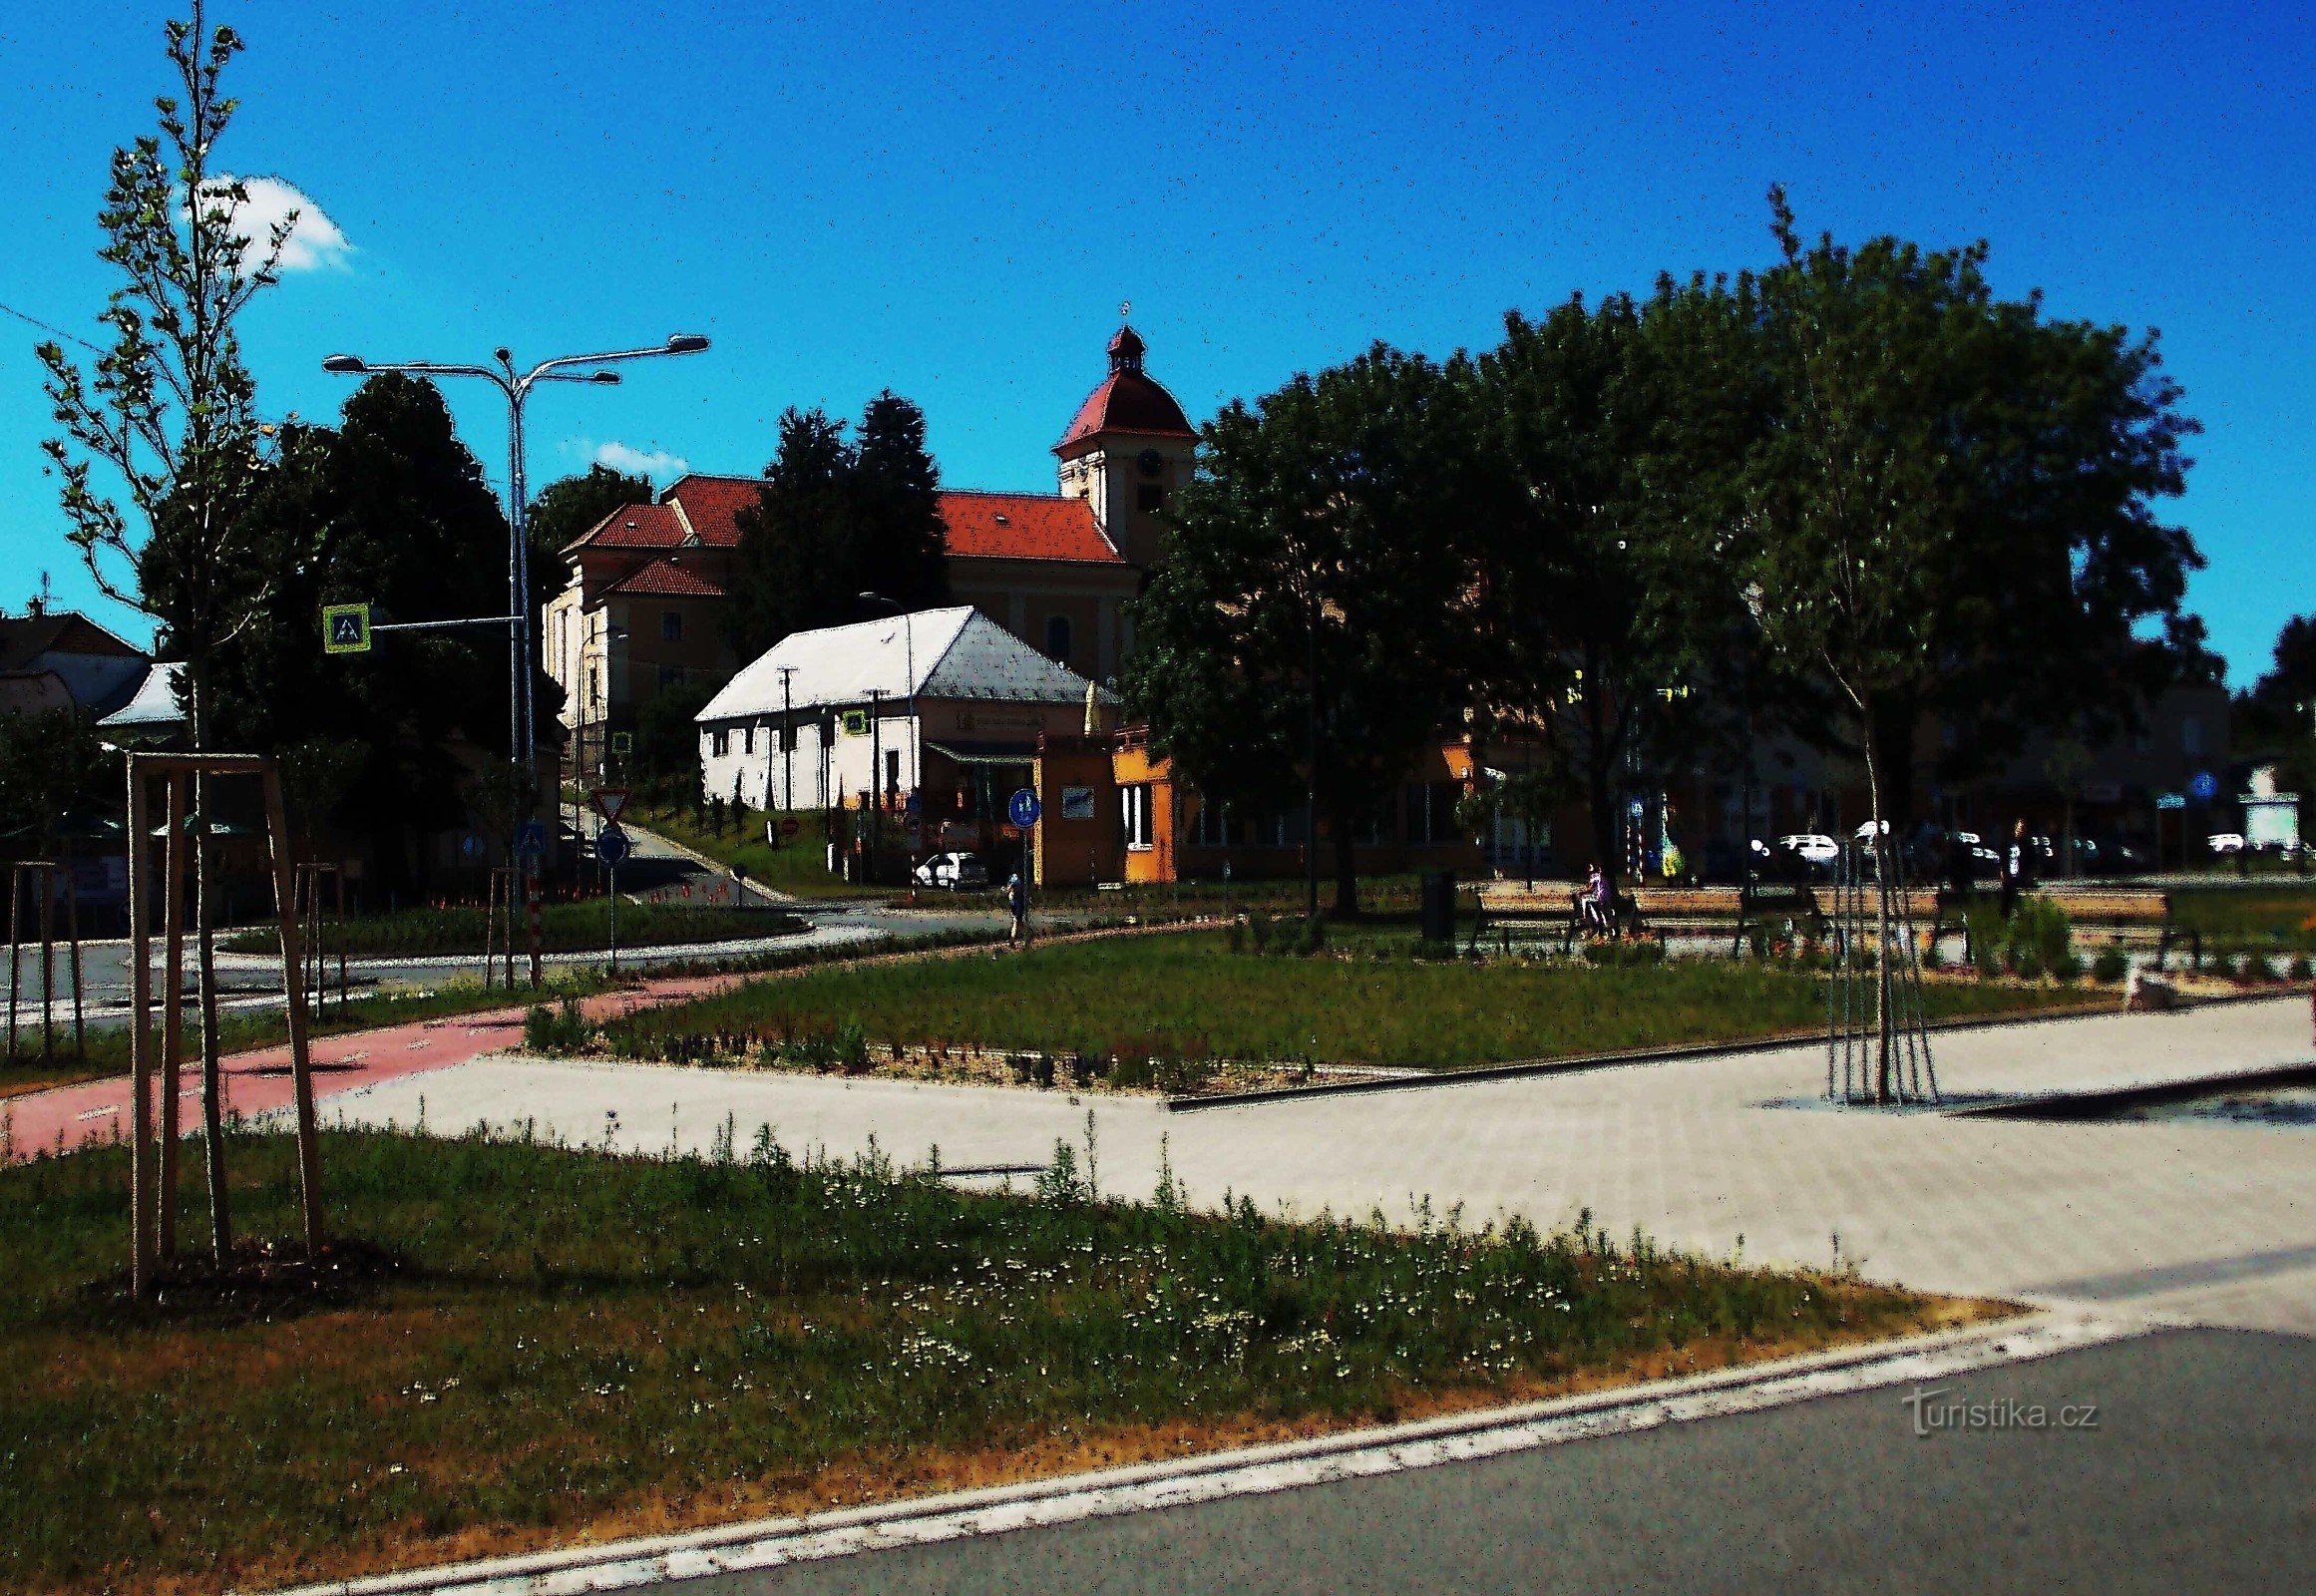 Restored square in Malenovice near Zlín